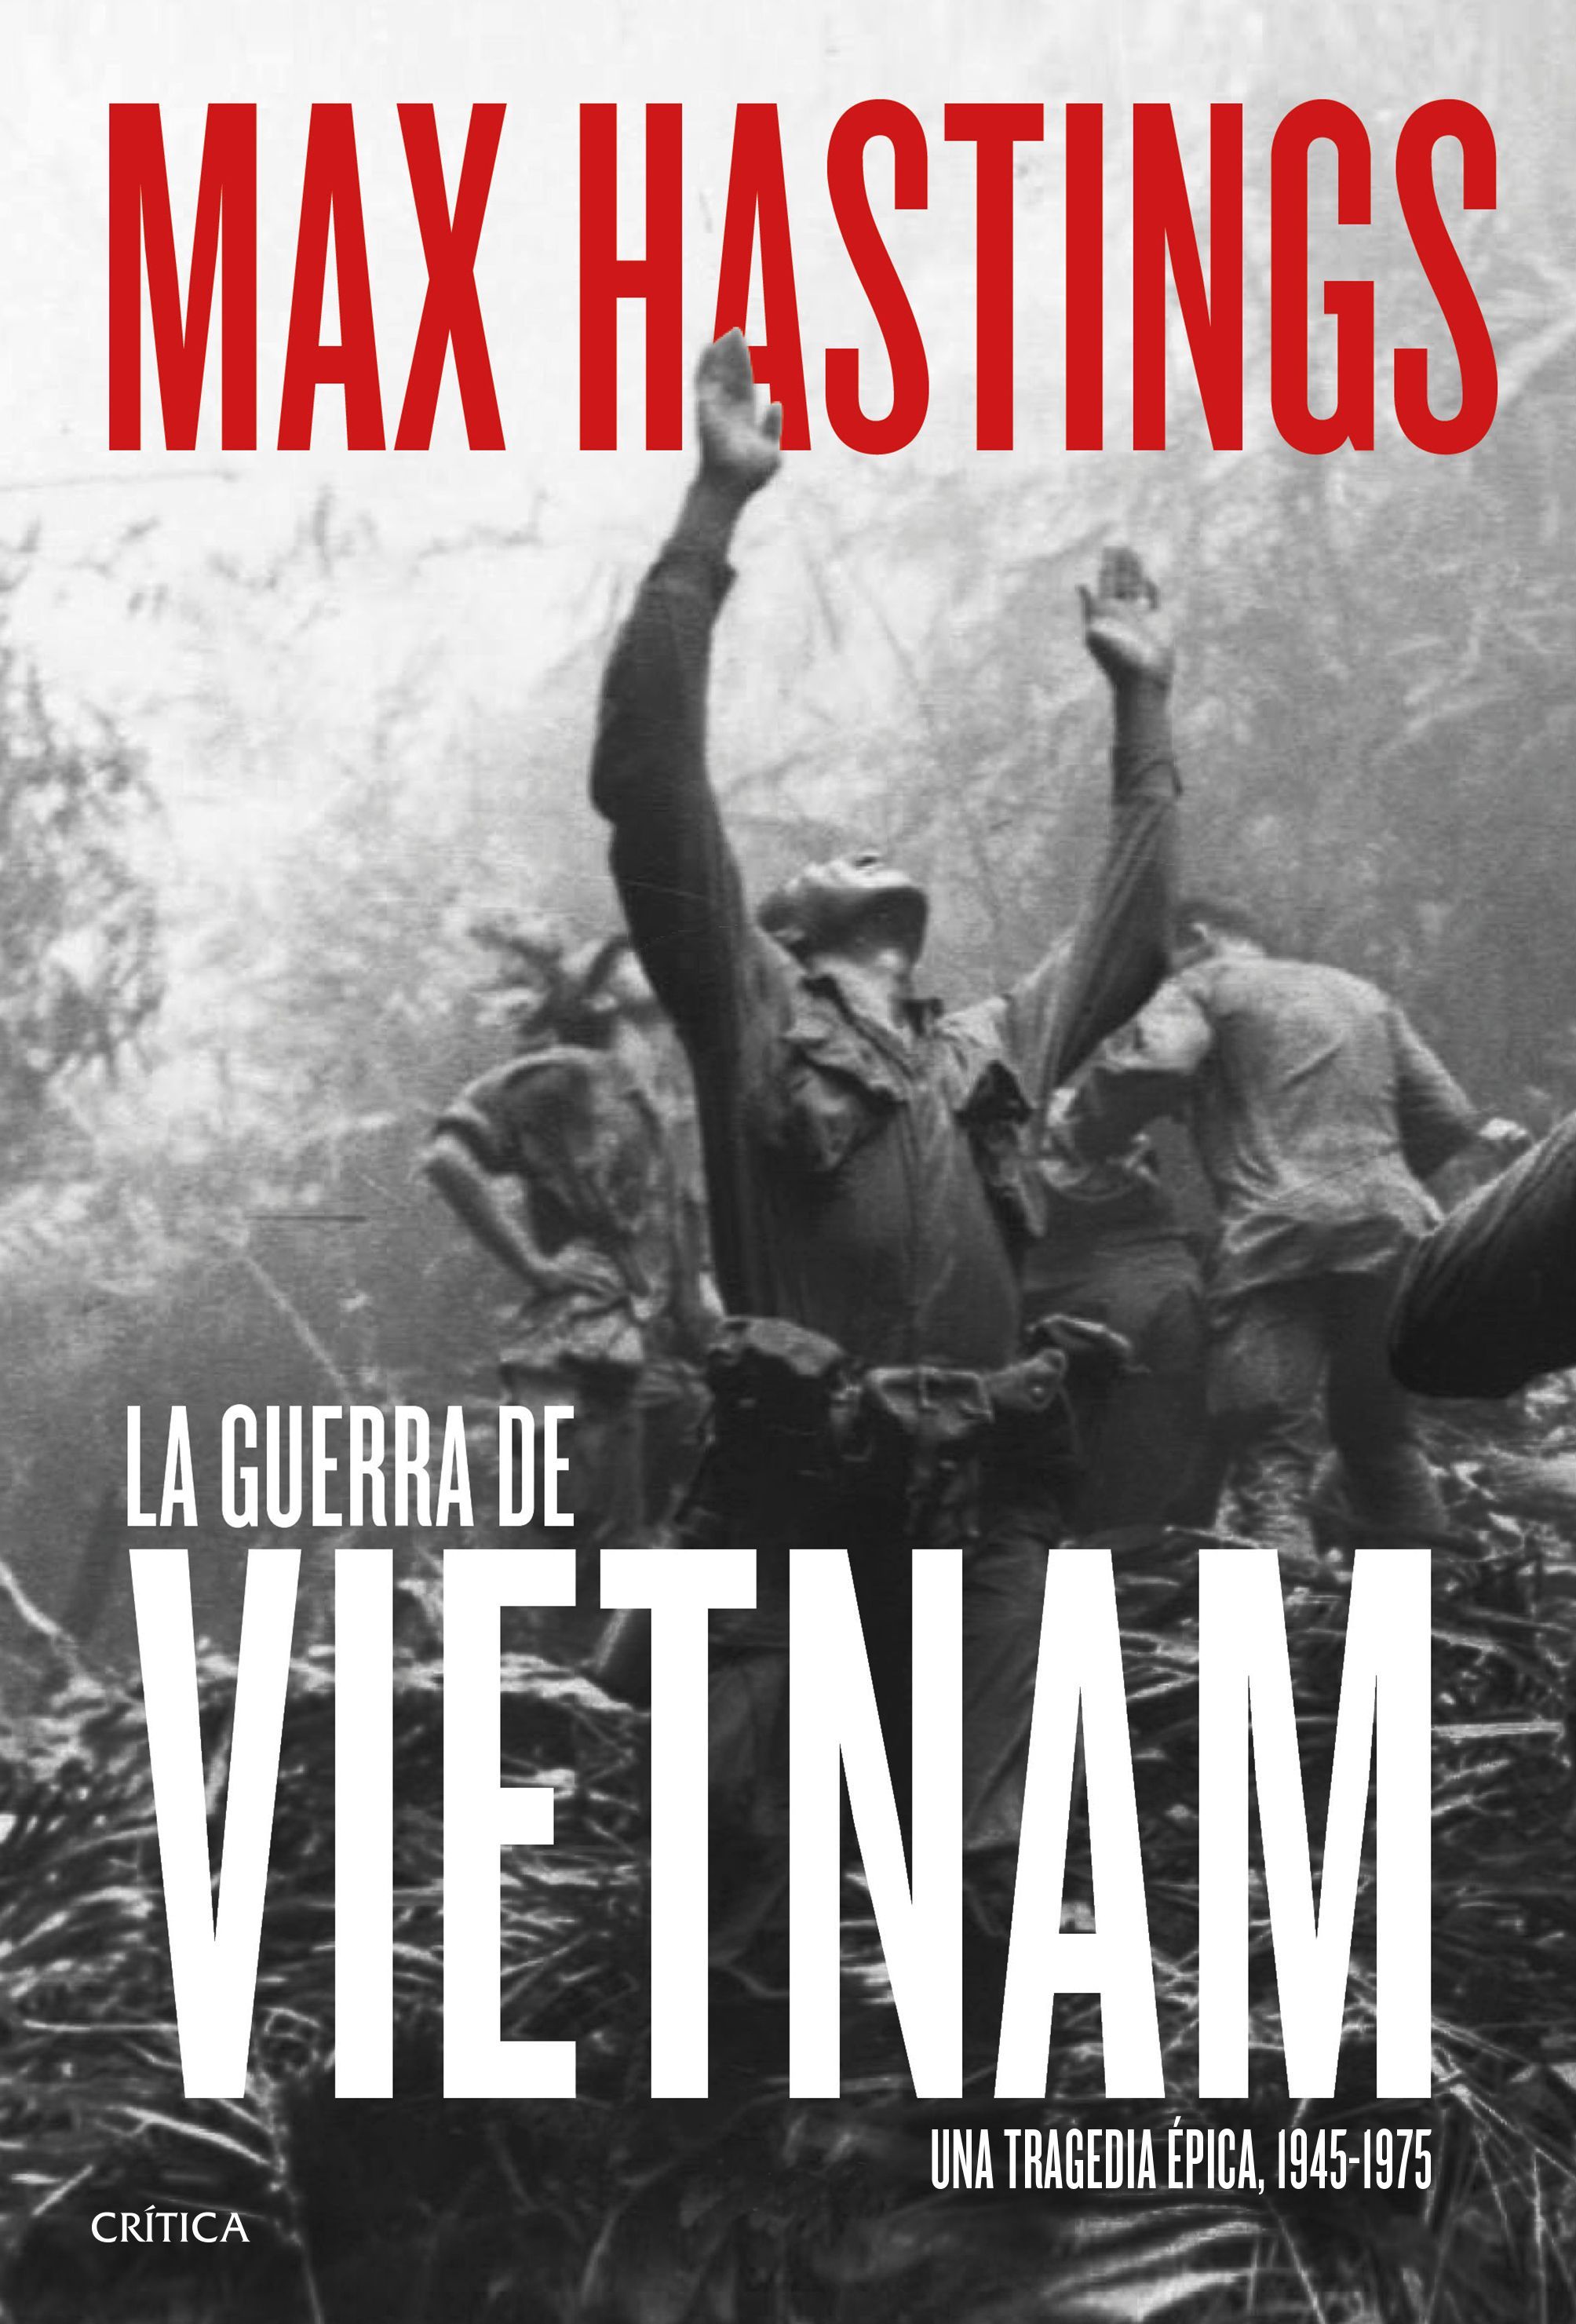 El periodista Max Hastings analiza en profundidad la Guerra del Vietnam en su nuevo libro